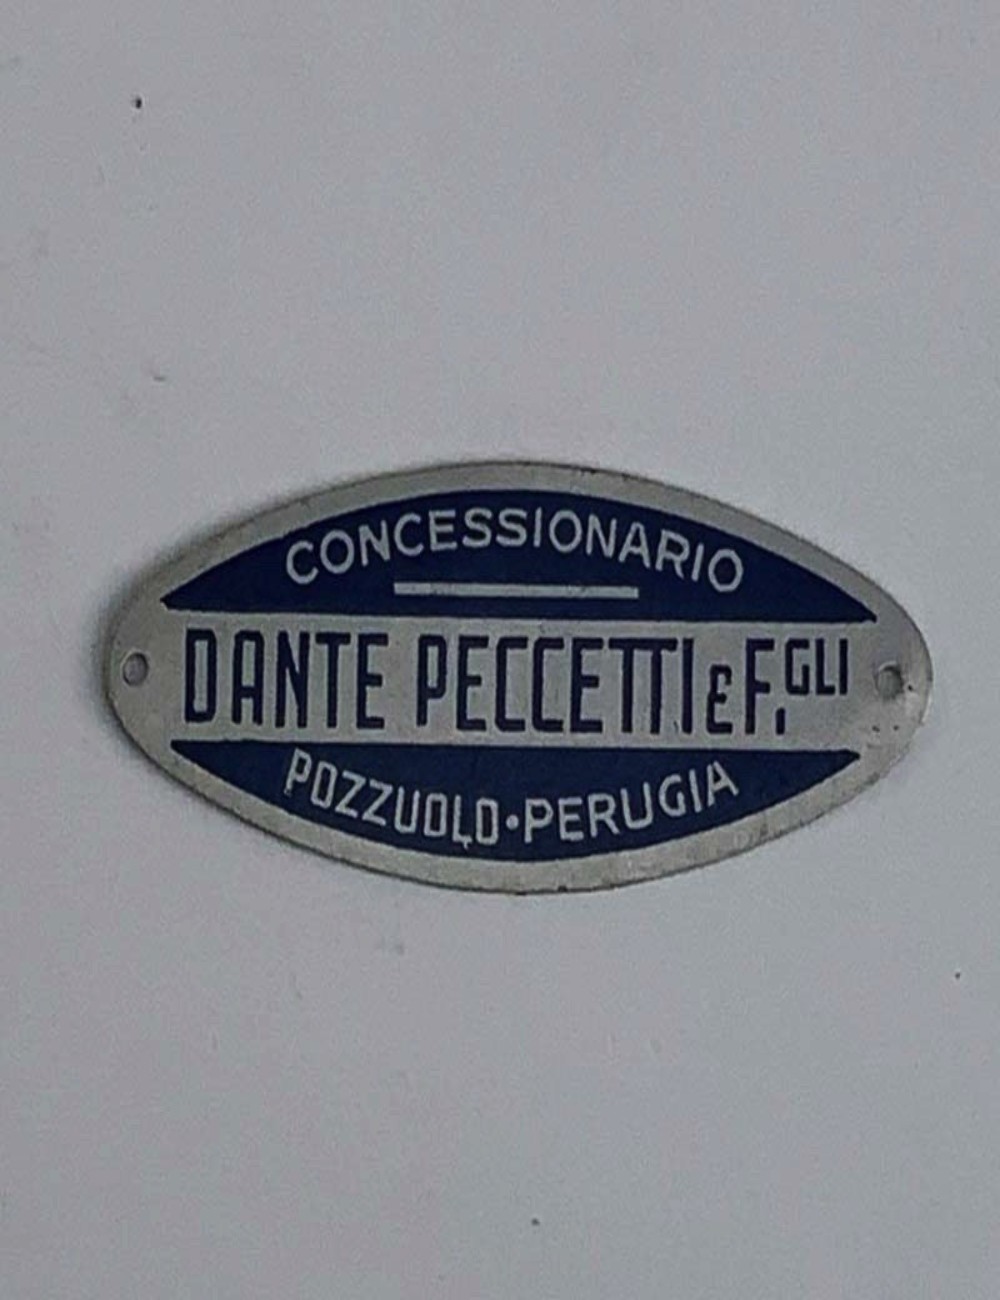 Dante Peccetti and F.gli dealer plate